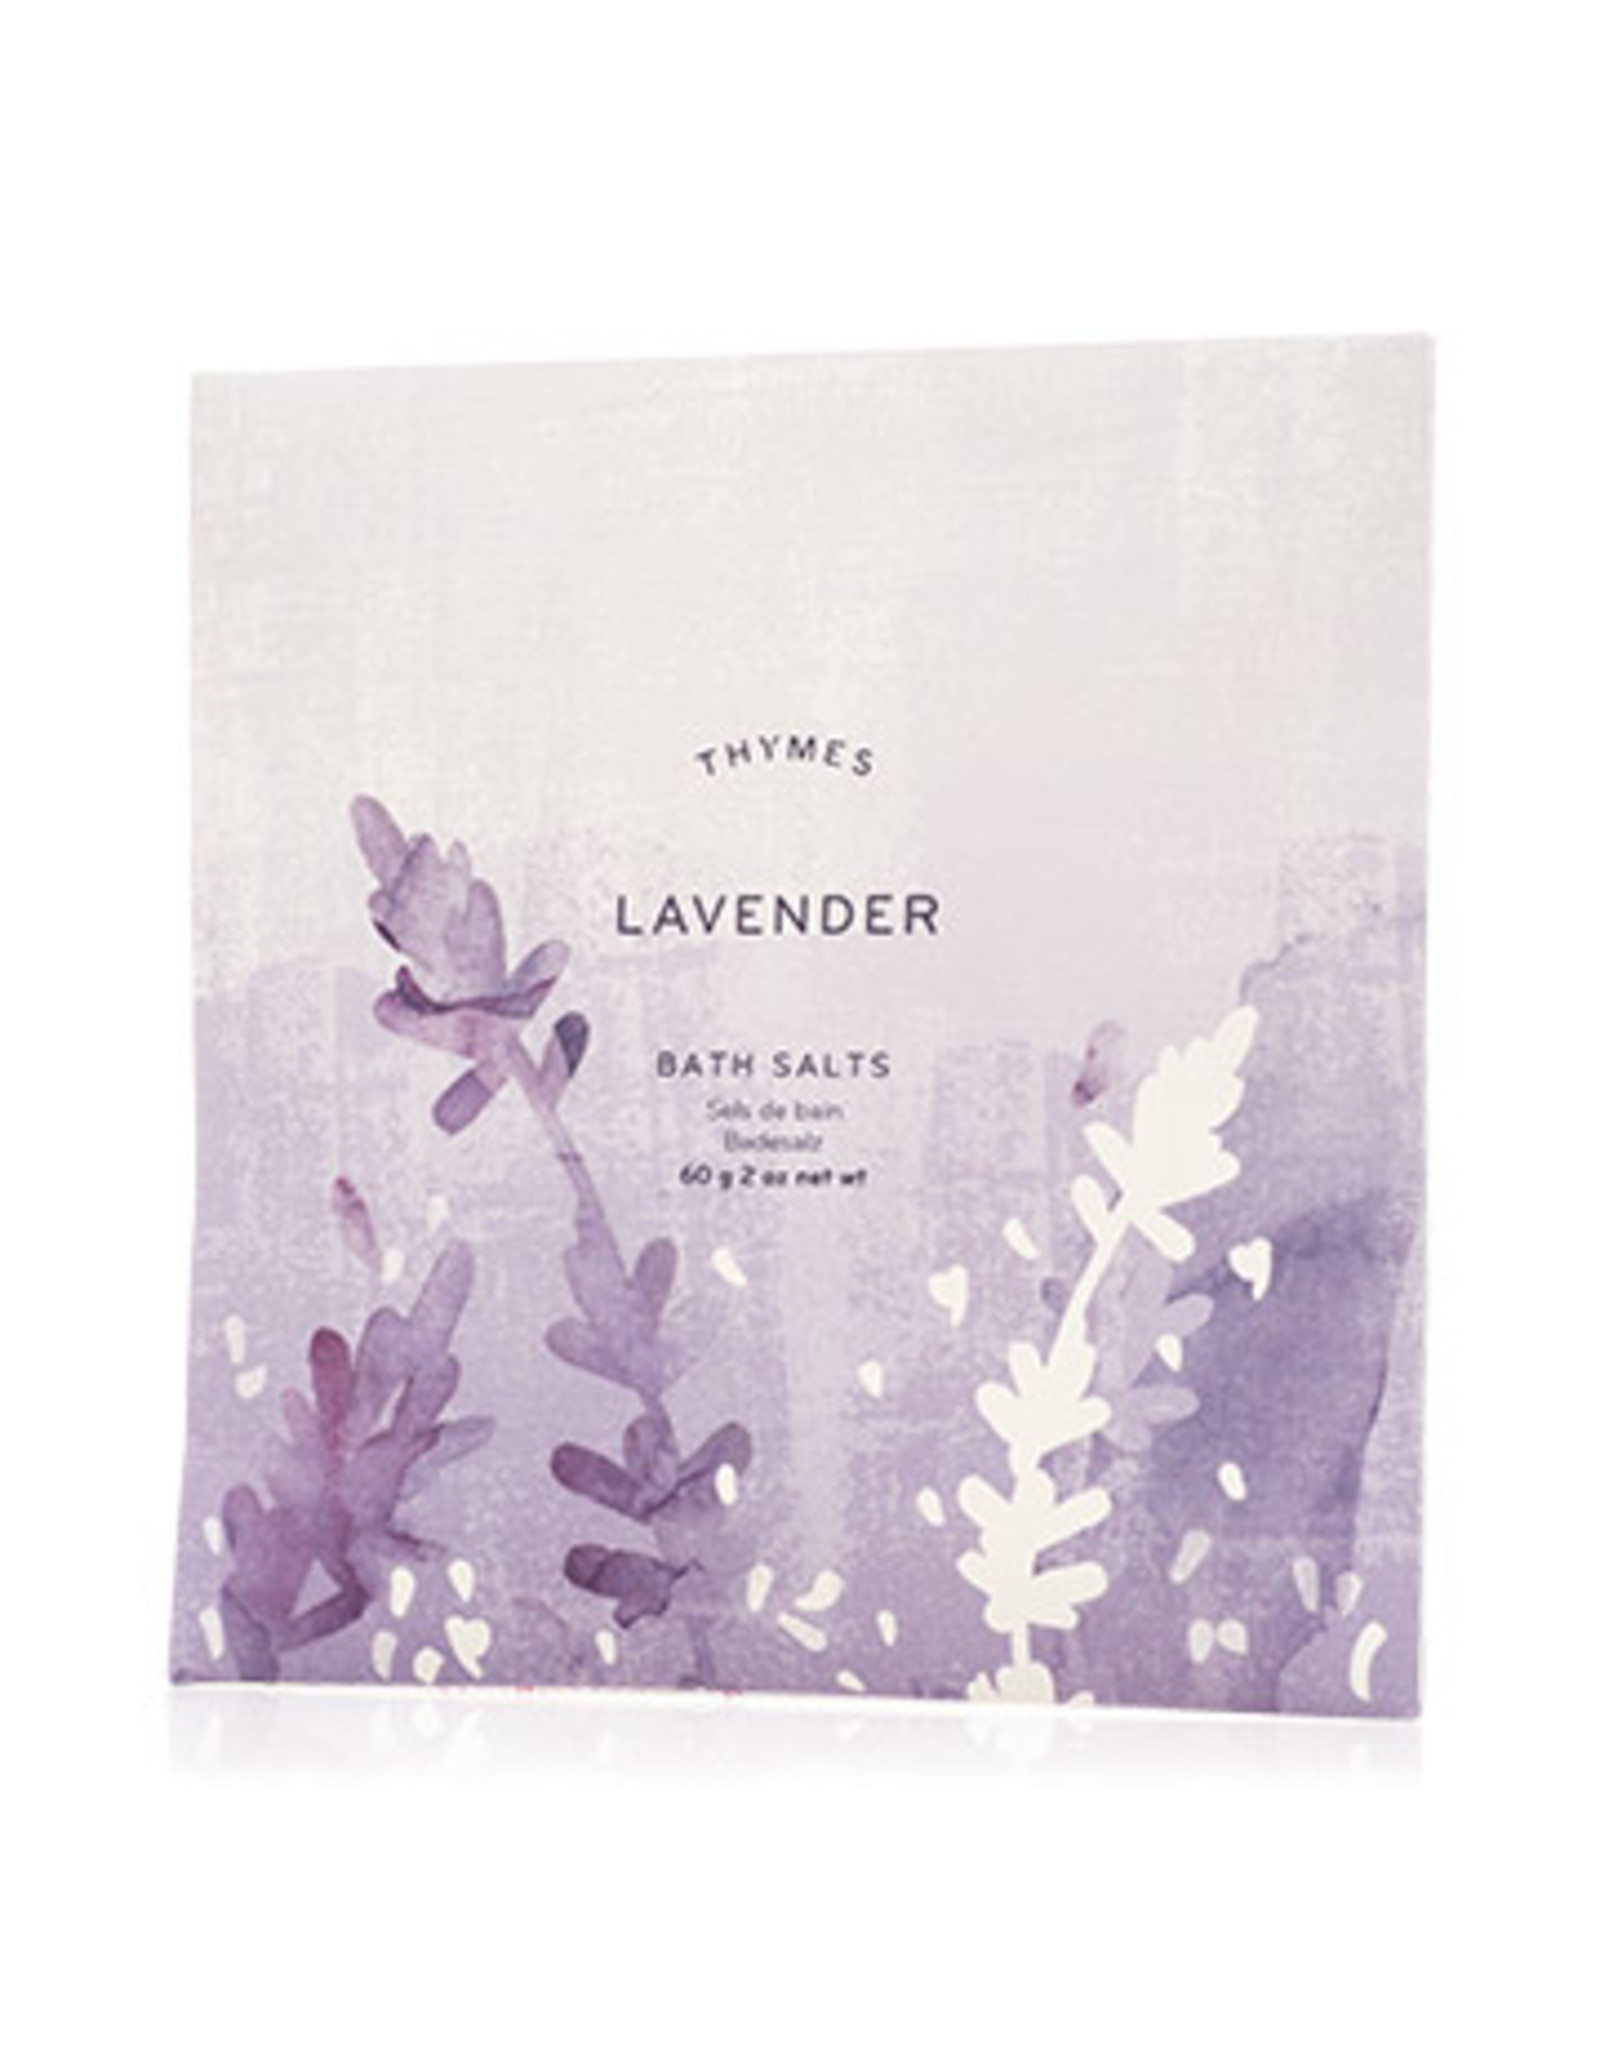 Thymes Lavender Bath Salts 2 oz